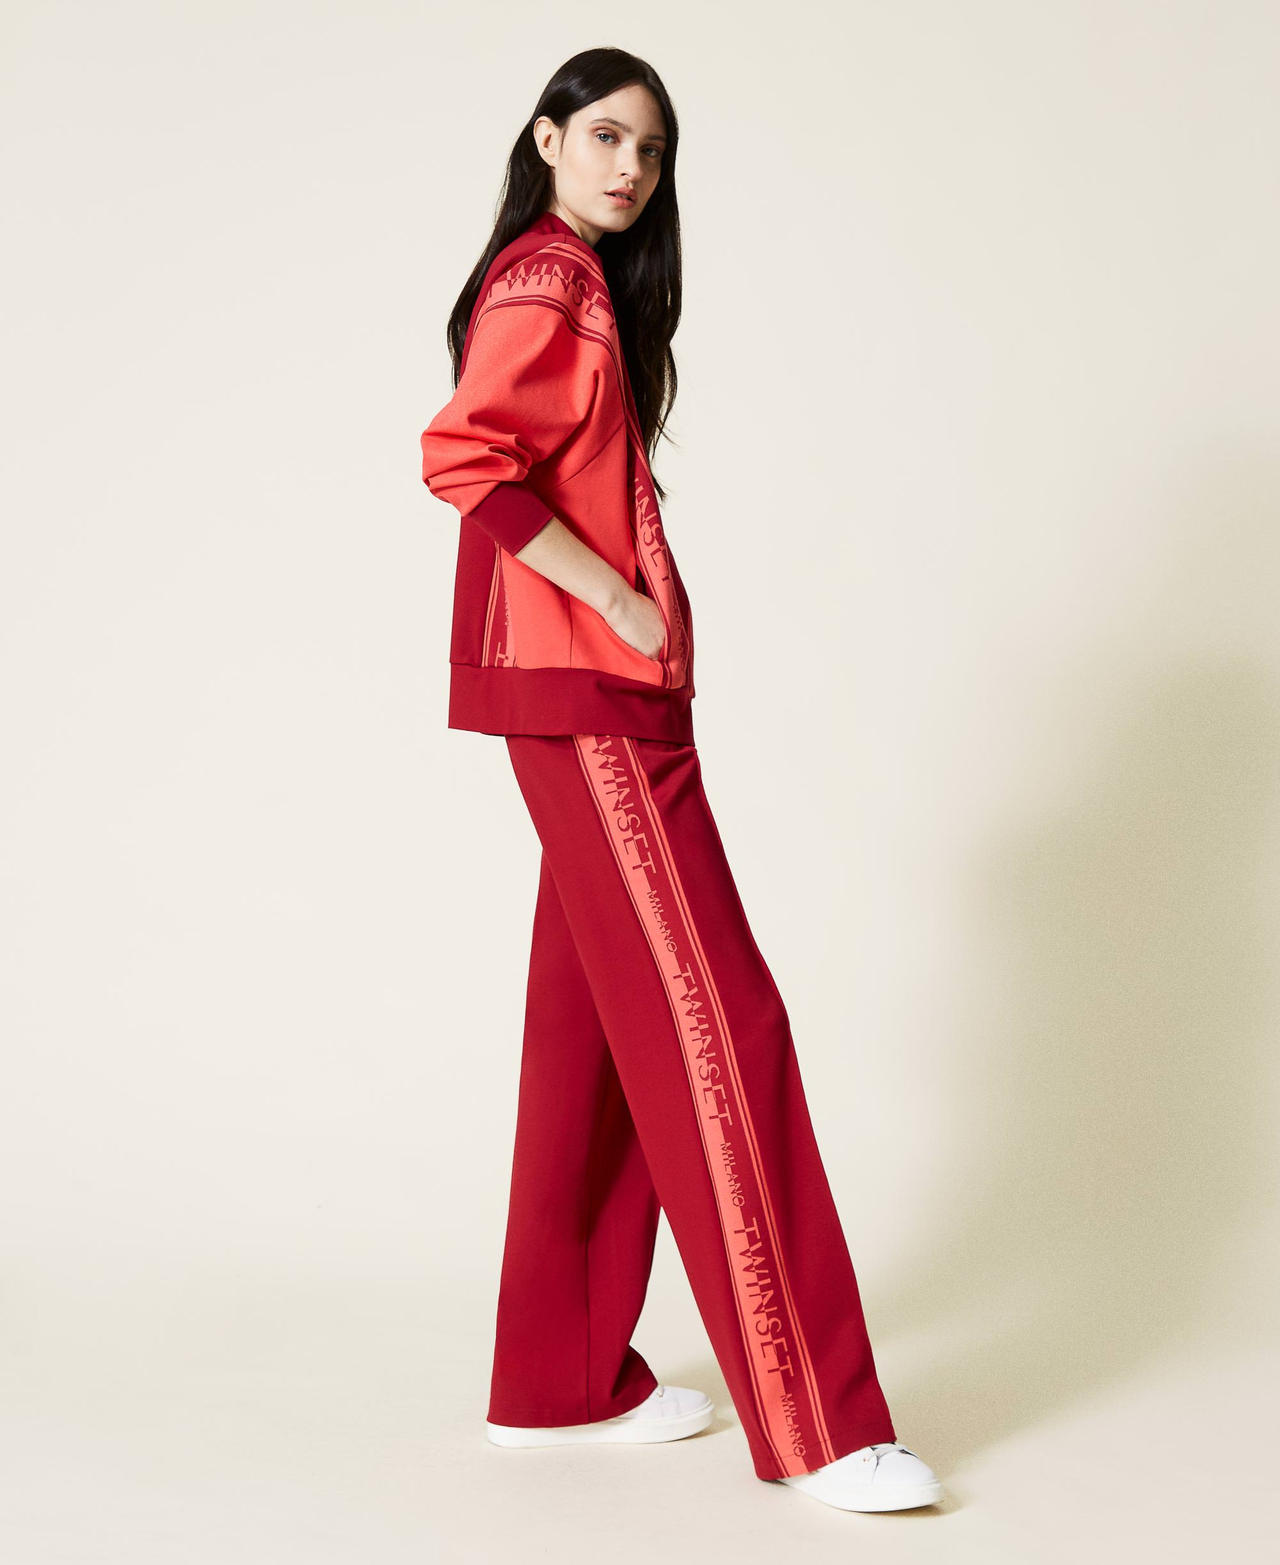 Sweat-shirt et pantalon en maille avec logo Bicolore Rouge Framboise Foncé / Coral Candy Femme 212TT2385-02